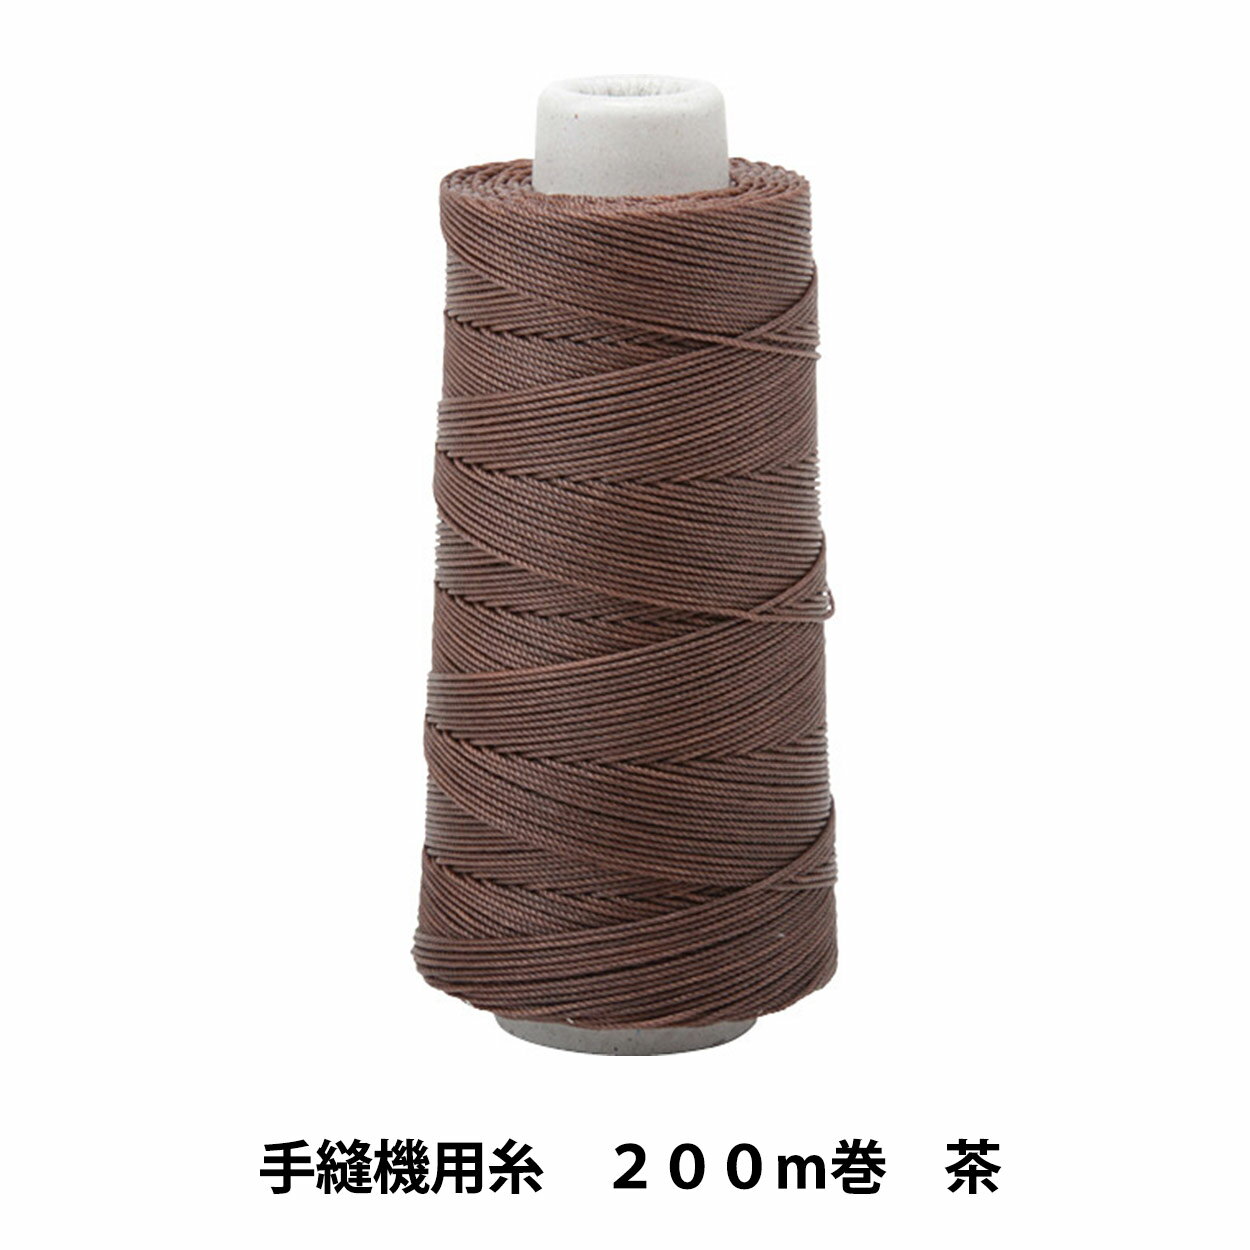 手縫い糸 『手縫機用糸 200m巻 茶 21202-02』 LEATHER CRAFT クラフト社